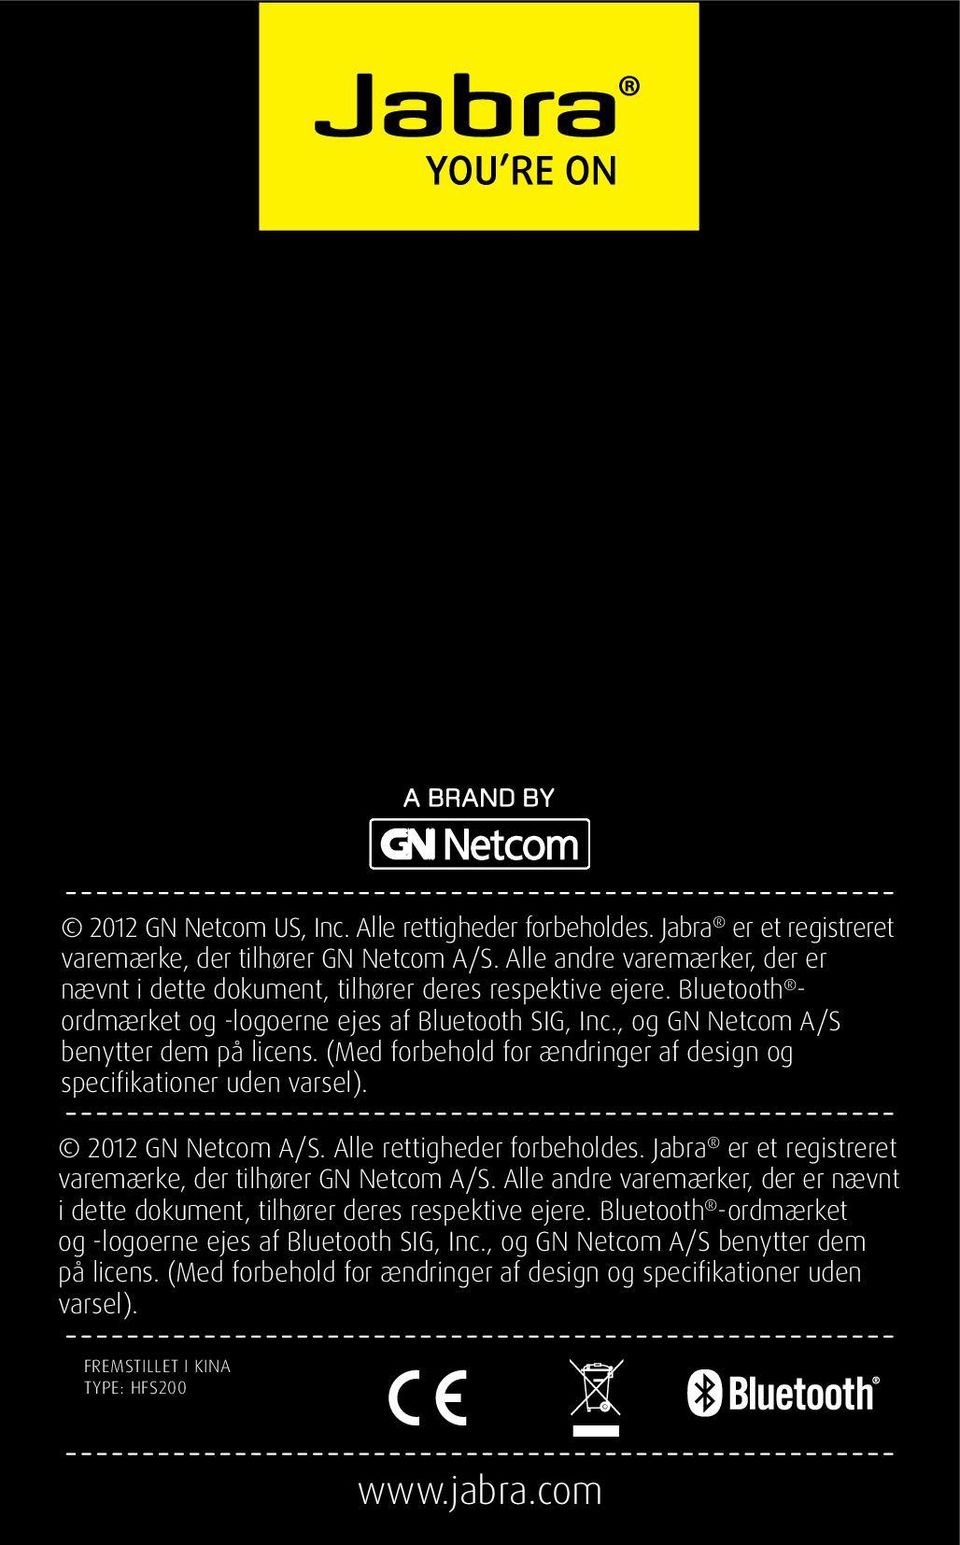 (Med forbehold for ændringer af design og specifikationer uden varsel). 2012 GN Netcom A/S. Alle rettigheder forbeholdes. Jabra er et registreret varemærke, der tilhører GN Netcom A/S.